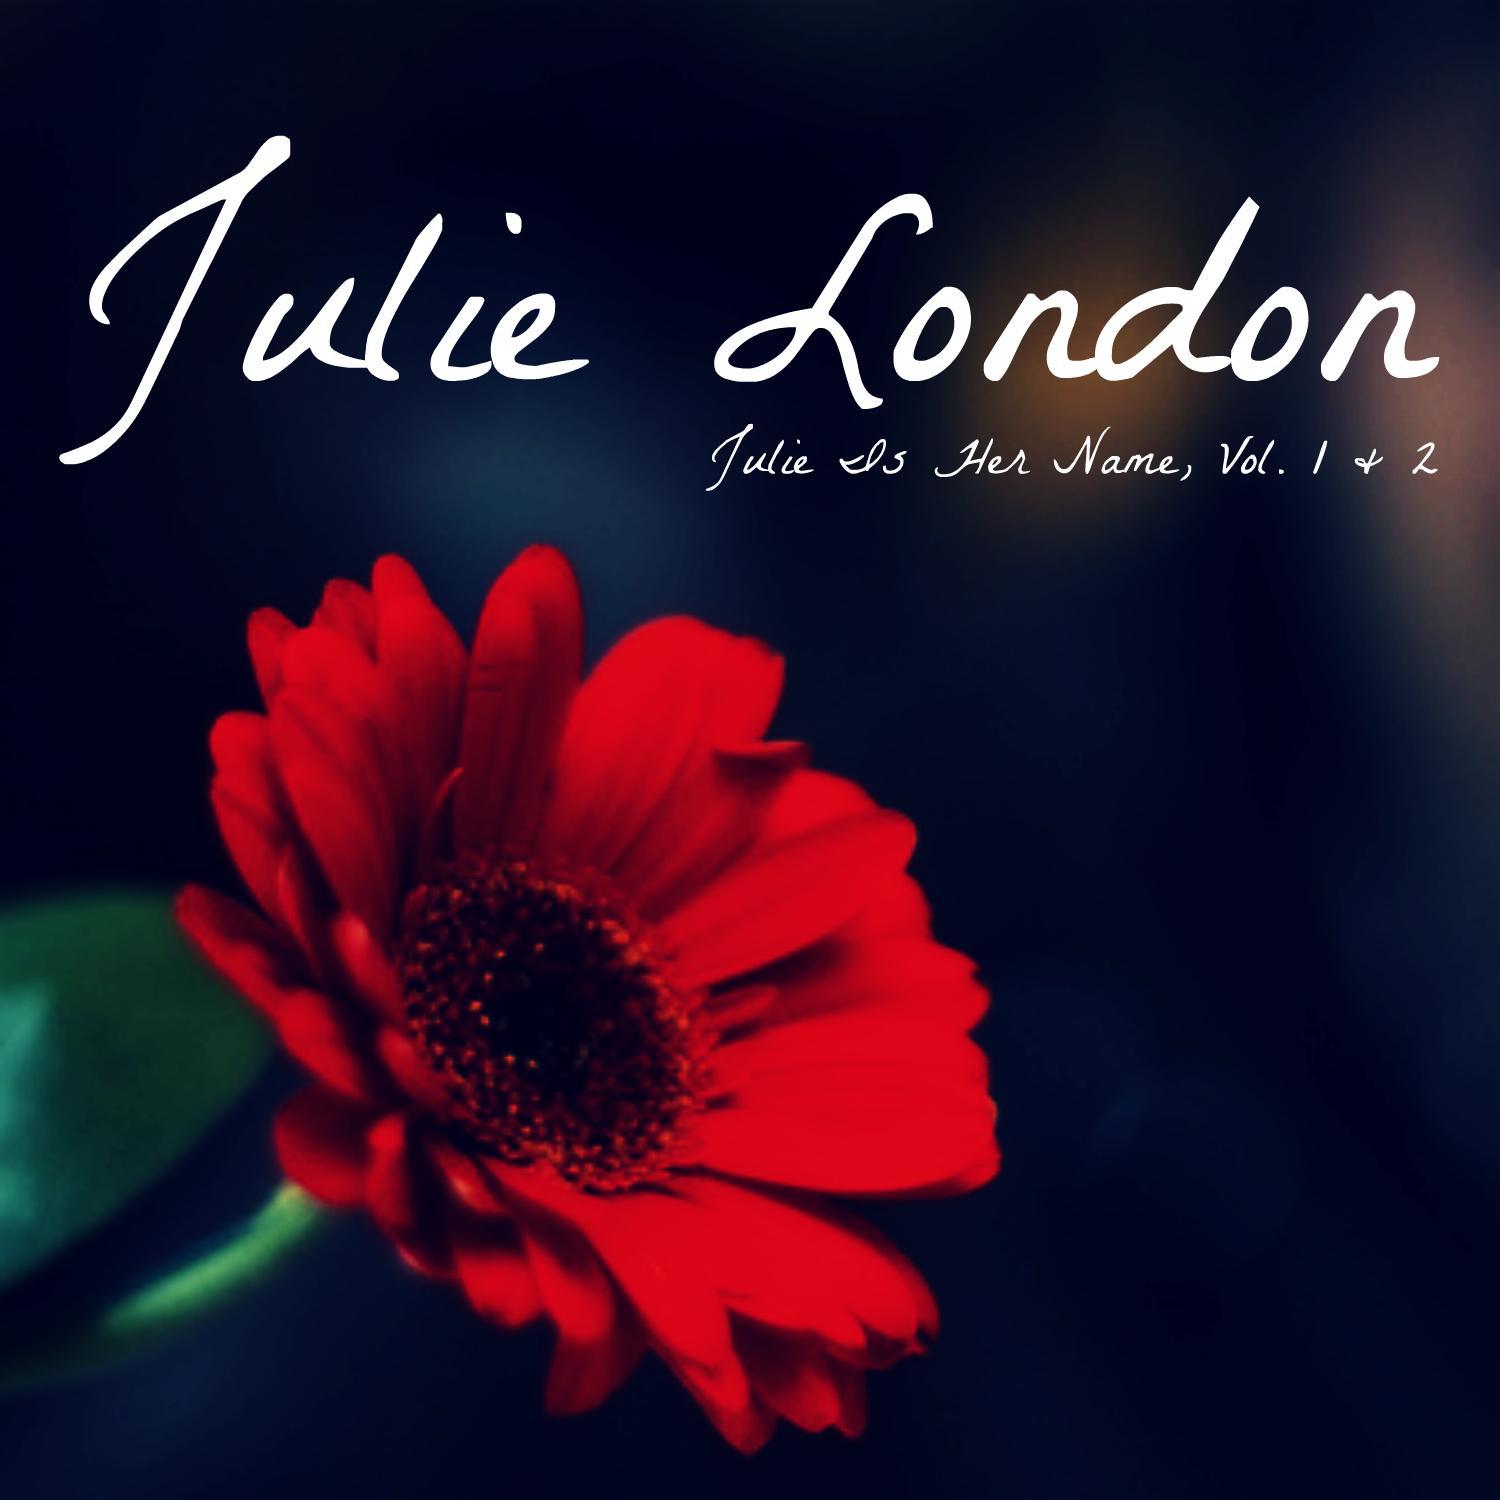 Julie Is Her Name Vol. 1 & 2